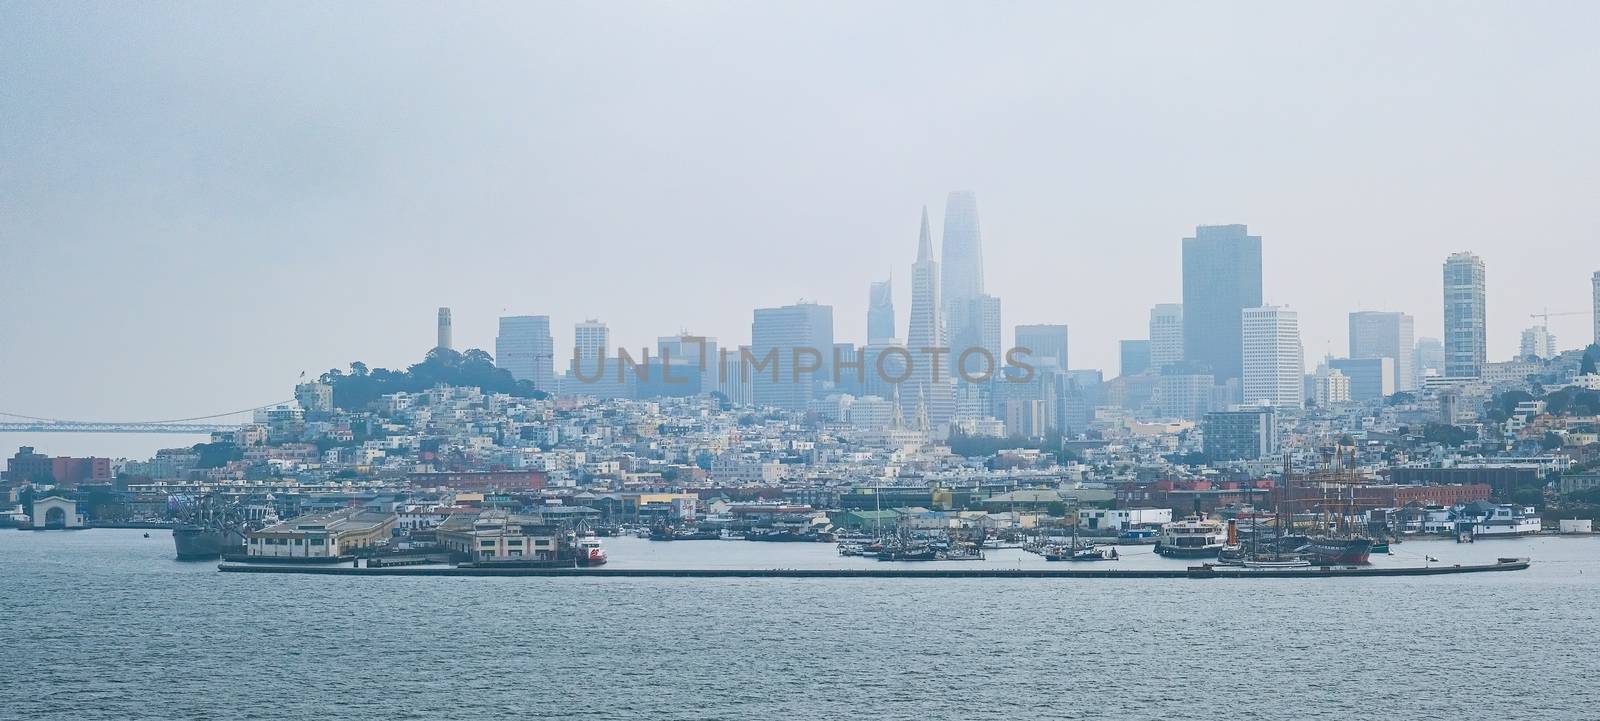 Foggy Coast of San Francisco Across the Harbor from the Bay